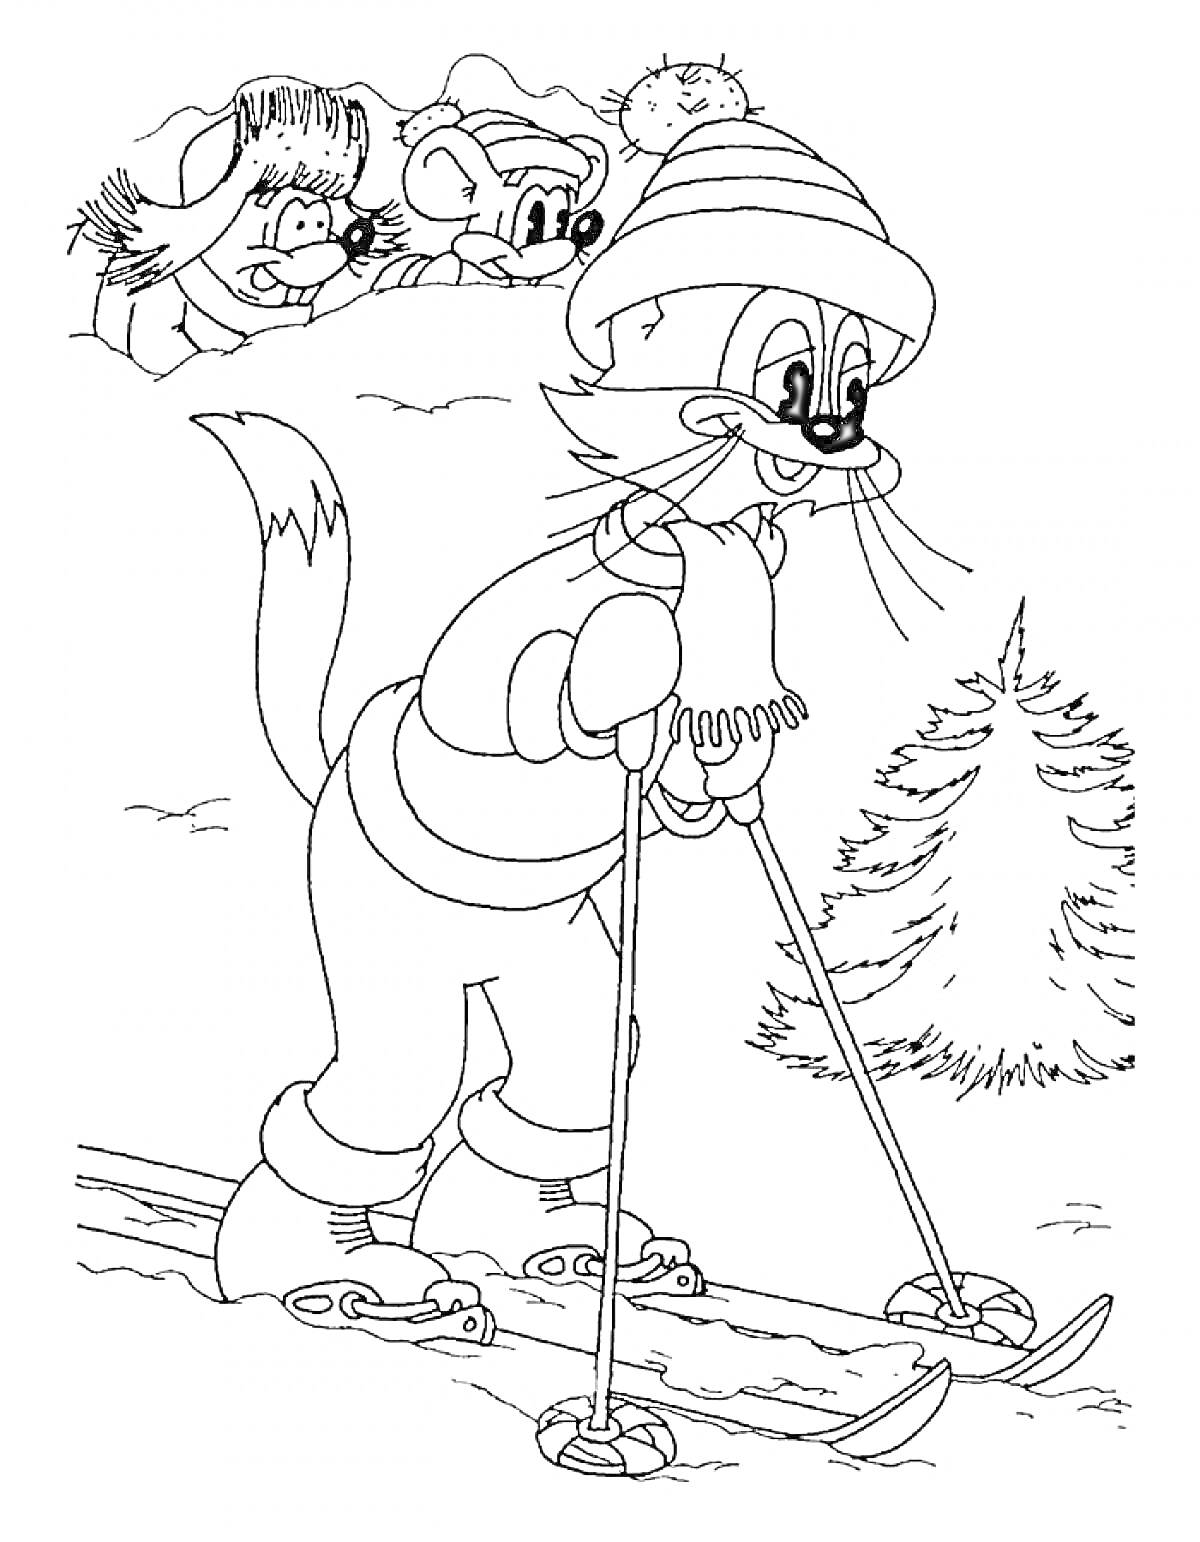 Раскраска Кот на лыжах в зимней шапке и шарфе, фон с деревом и тремя персонажами, наблюдающими сверху.